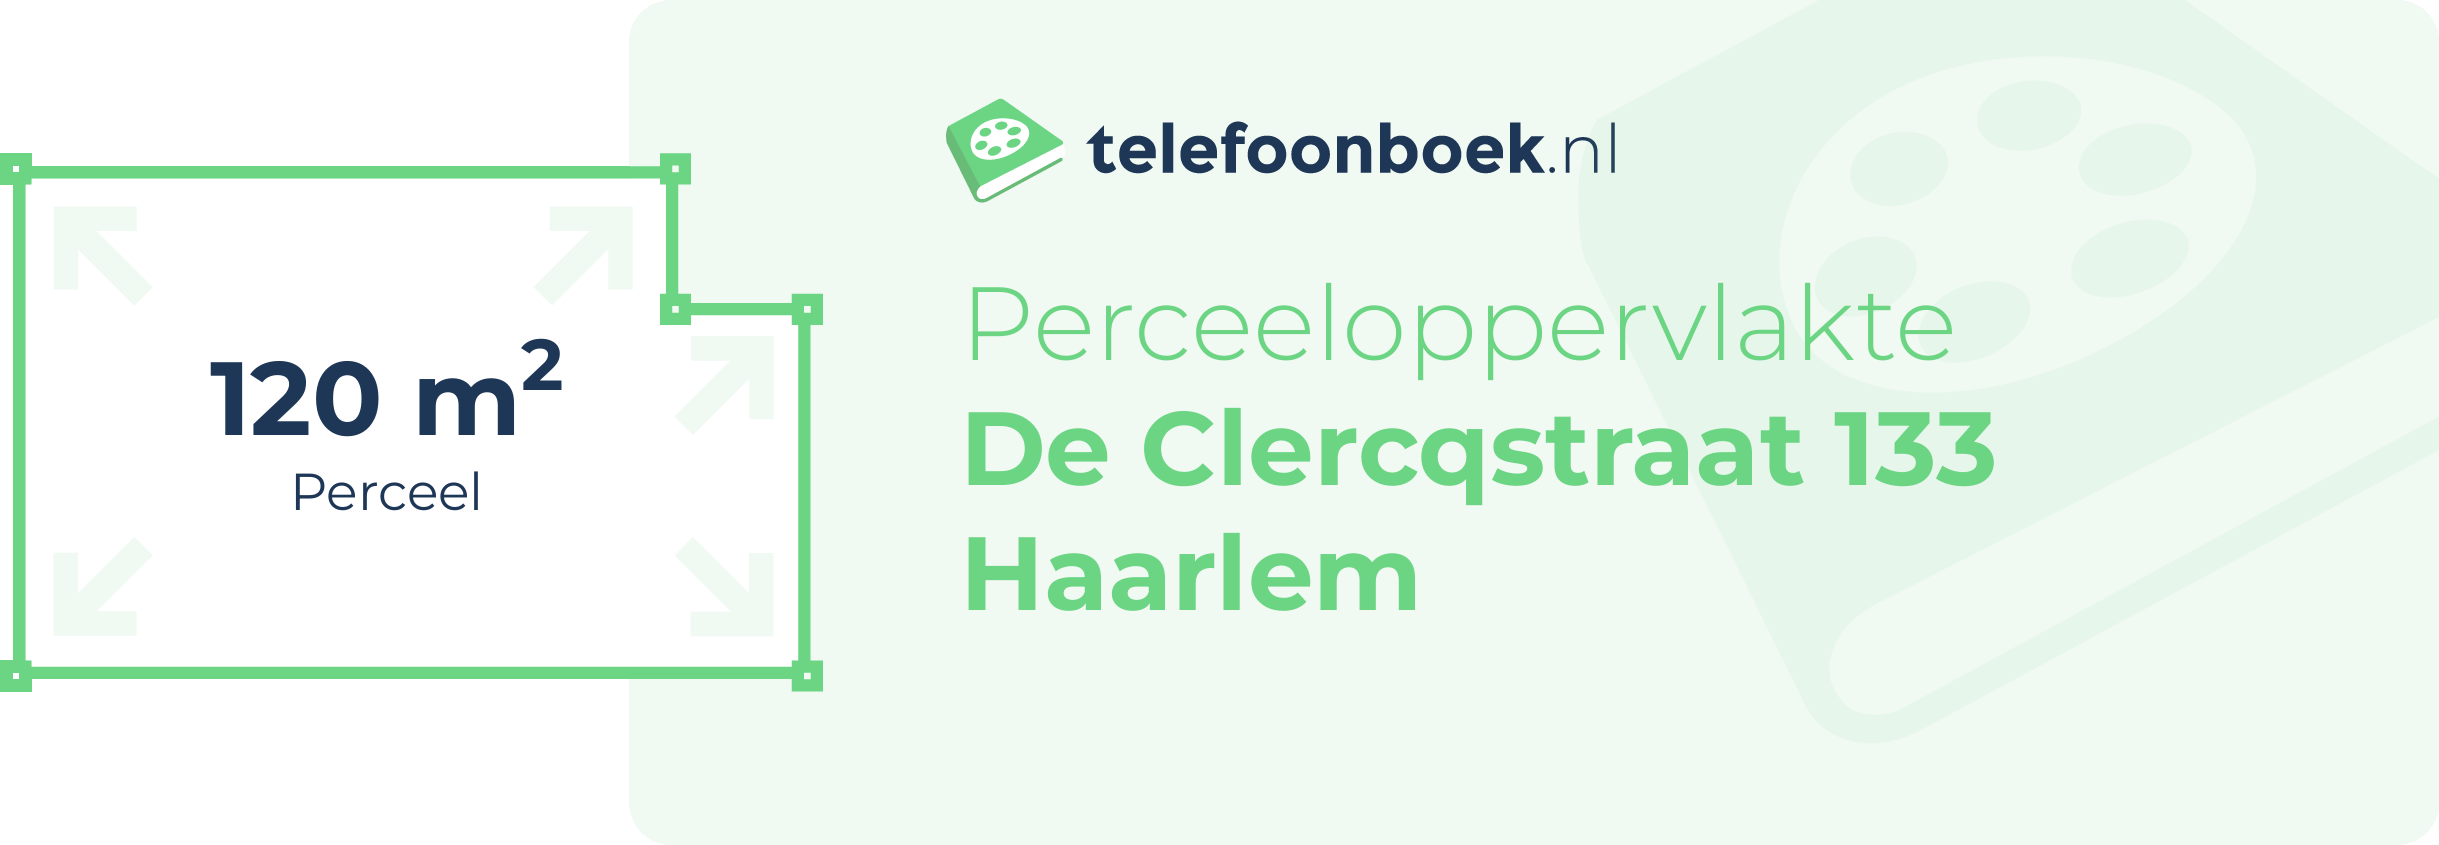 Perceeloppervlakte De Clercqstraat 133 Haarlem